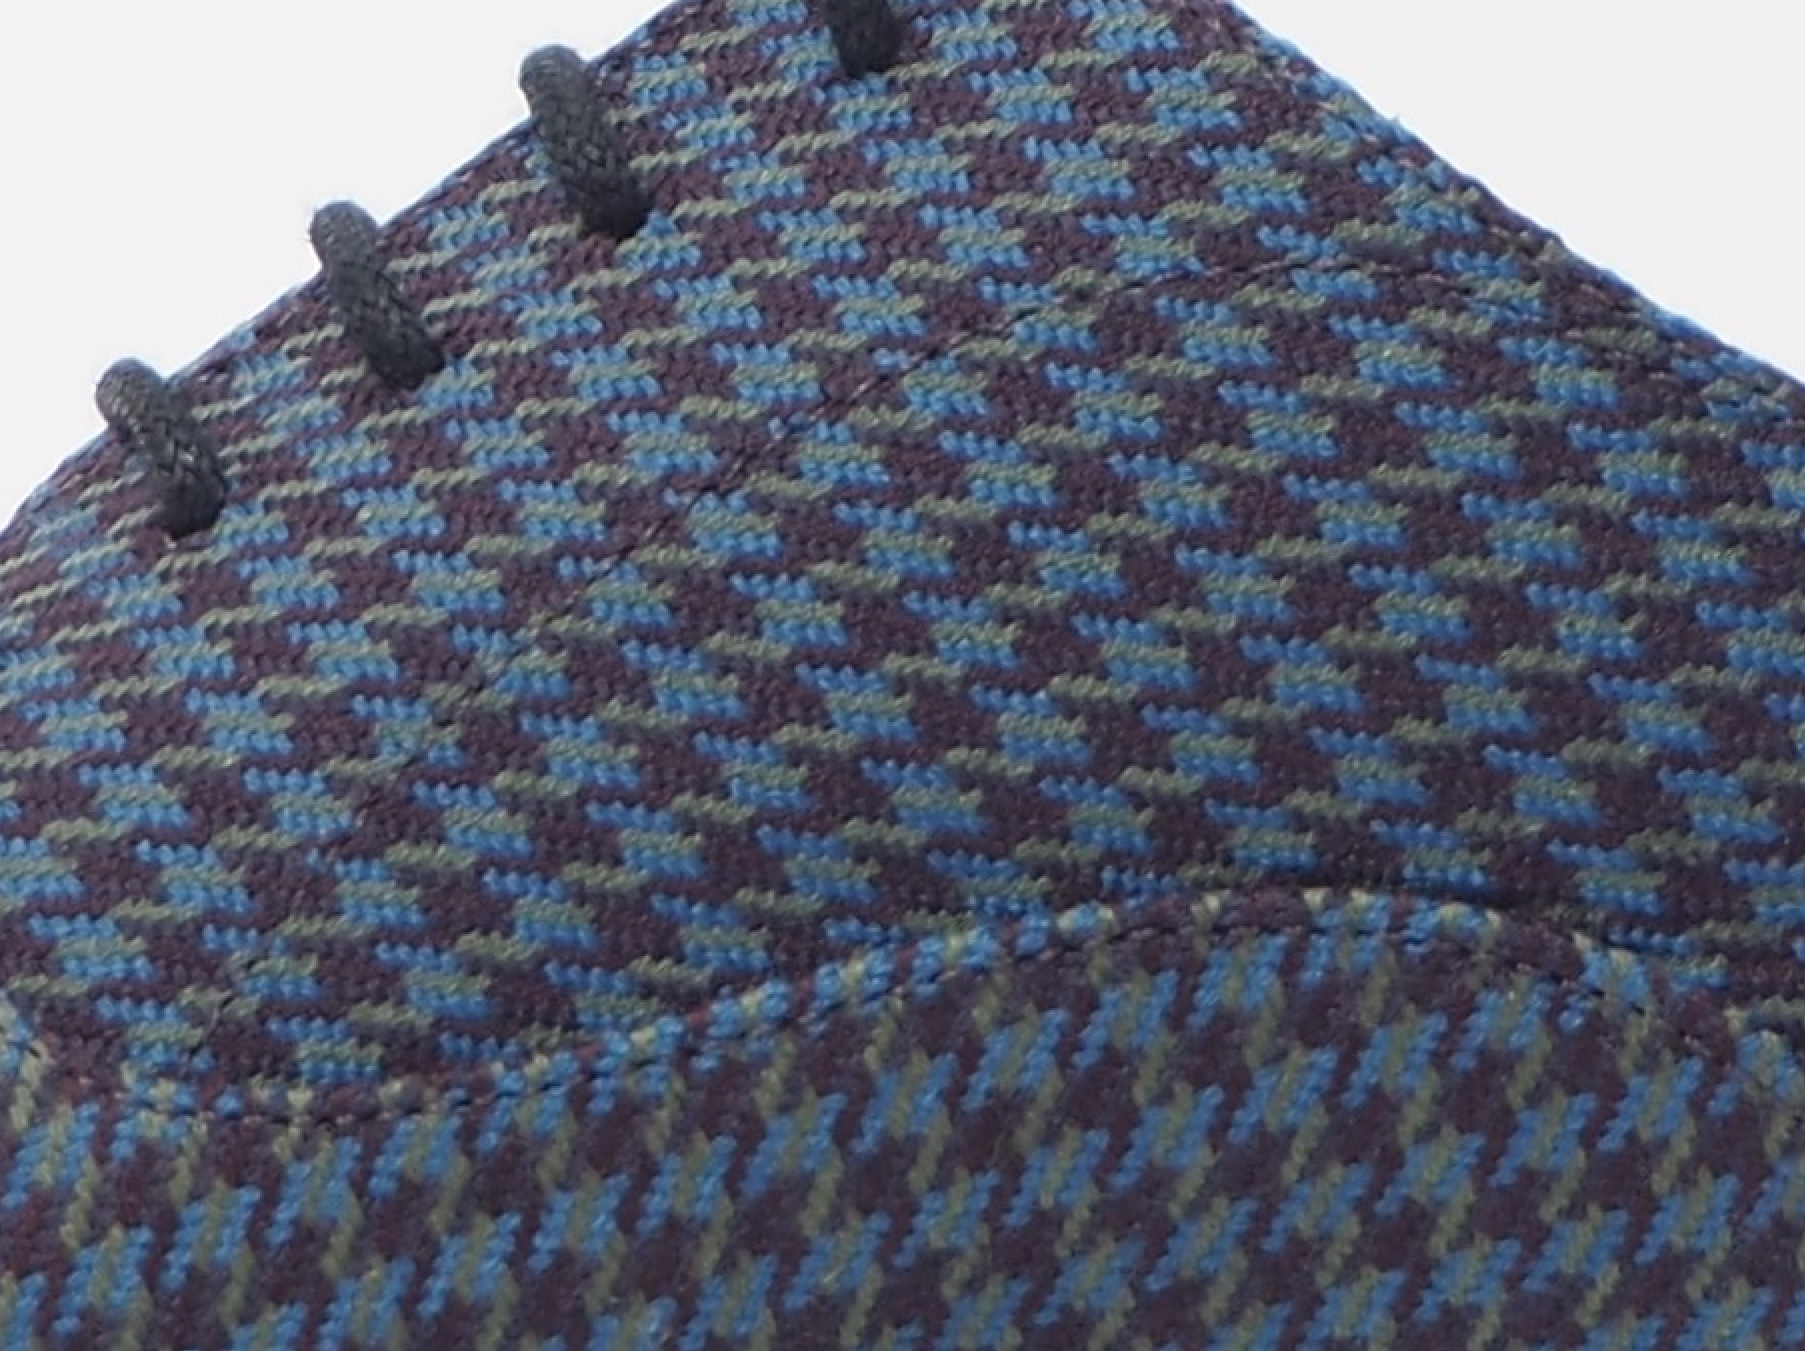 Size 44 - Blue-Violet Pied de Poule Oxford + Belt